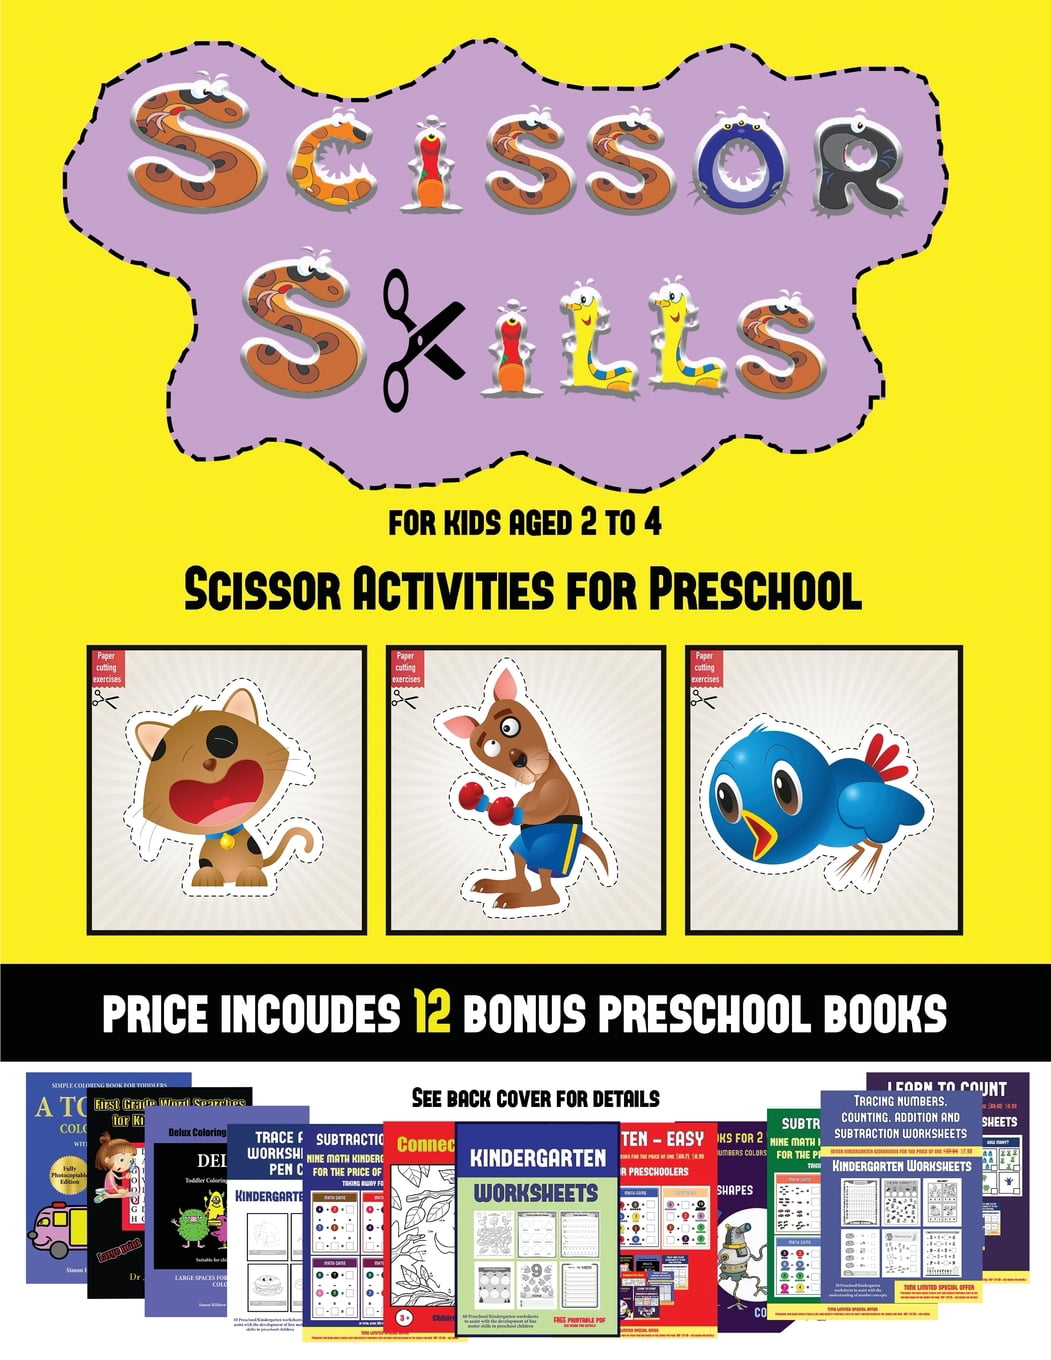 Scissor Activities for Preschool: Scissor Activities for Preschool (Scissor  Skills for Kids Aged 2 to 4) : 20 full-color kindergarten activity sheets